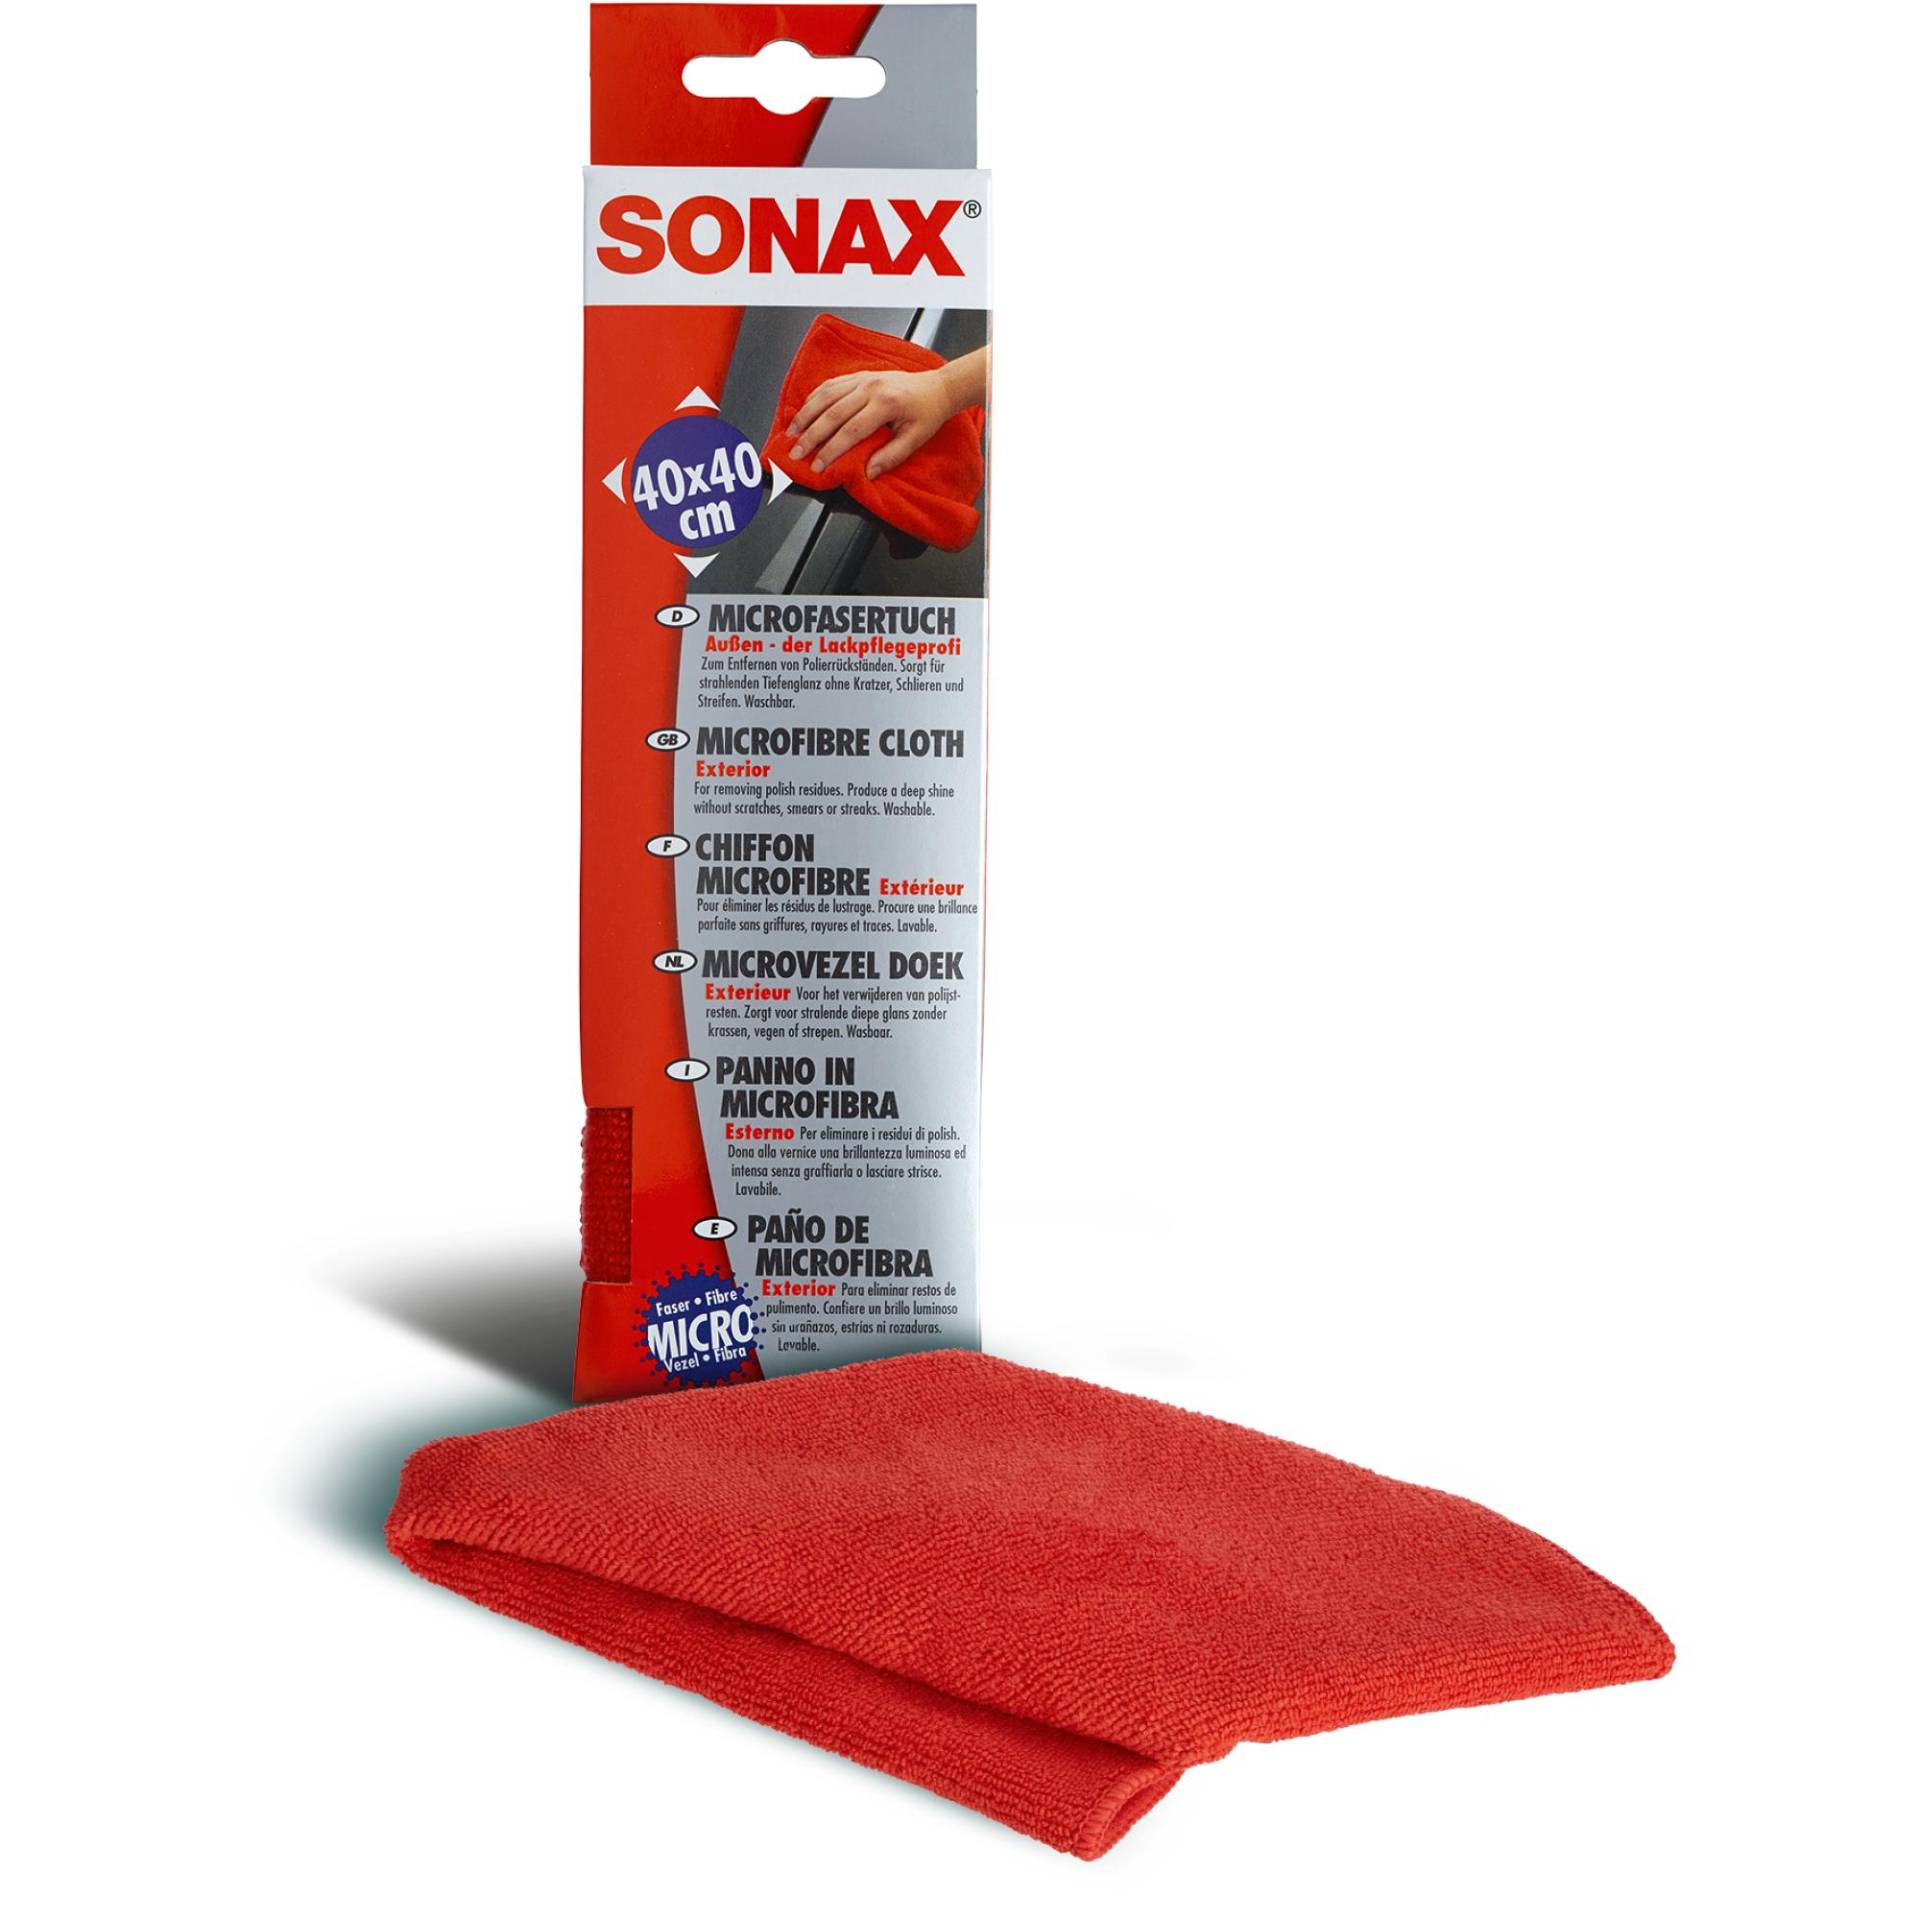 Sonax Microfasertuch 'Außen' rot 40 x 40 cm von Sonax